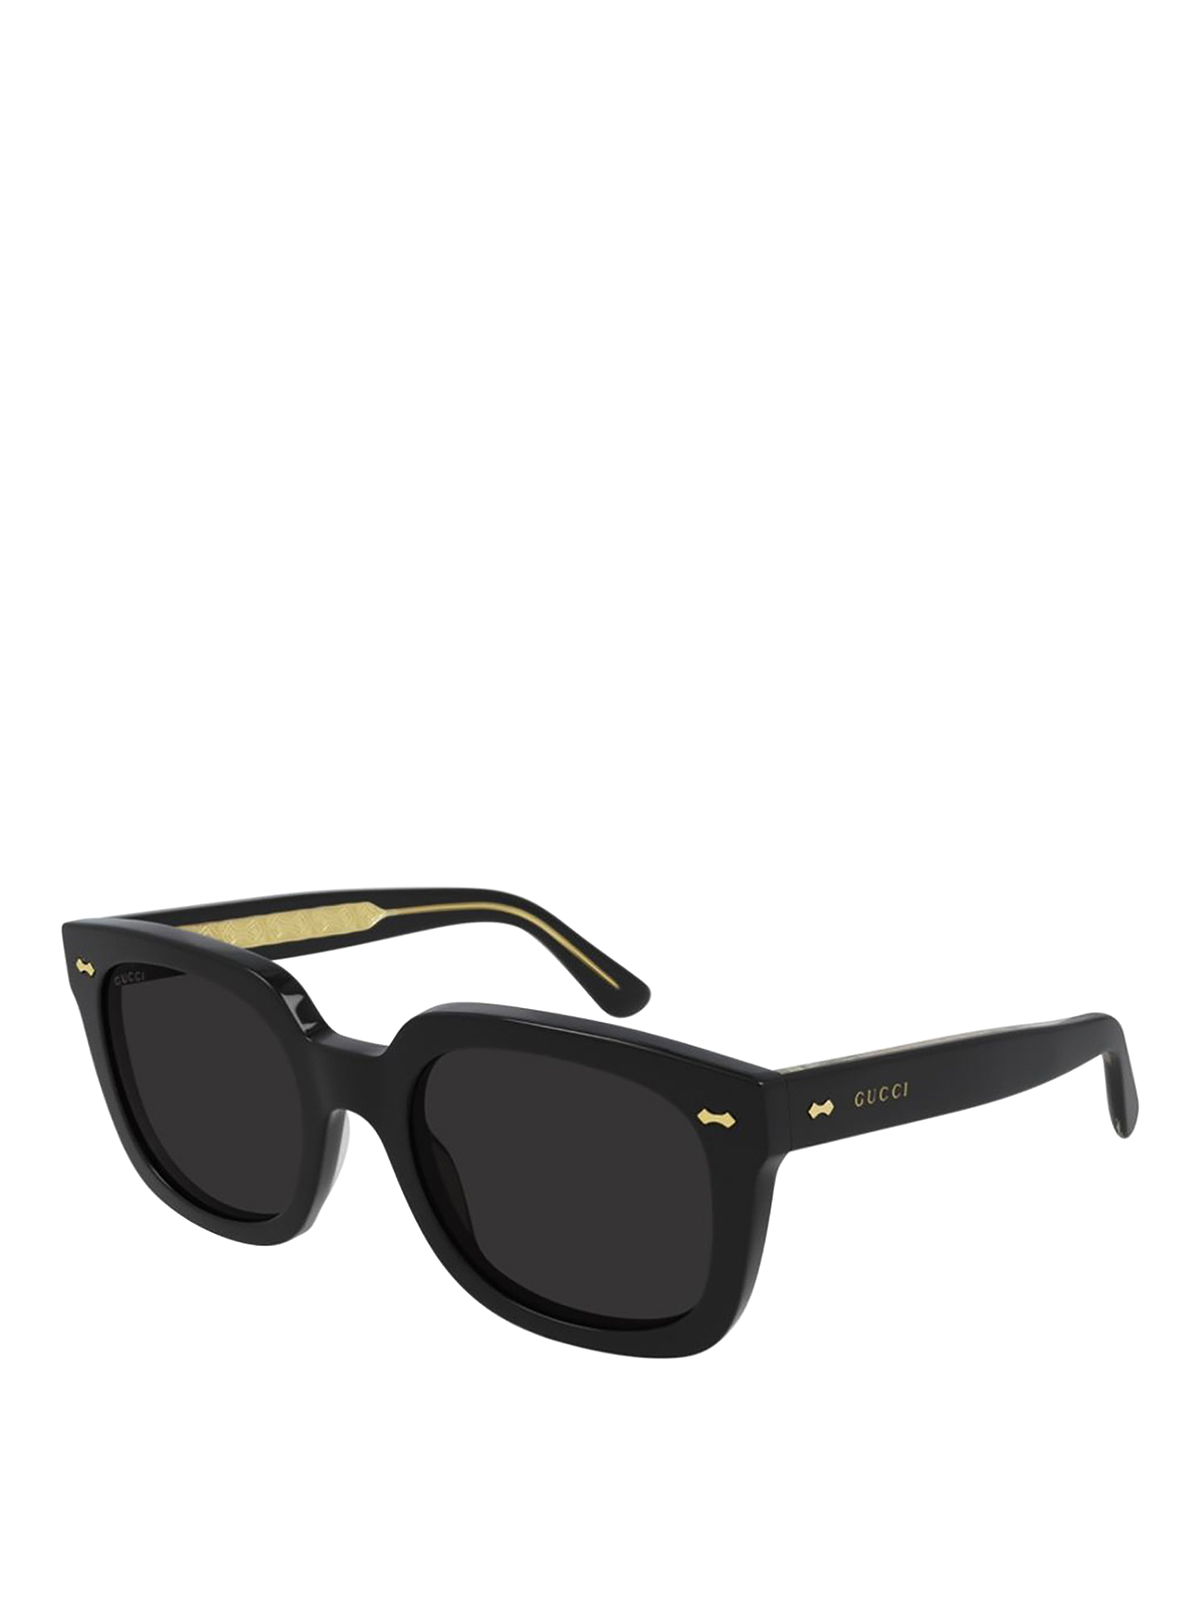 Gucci Squared Sunglasses In Black